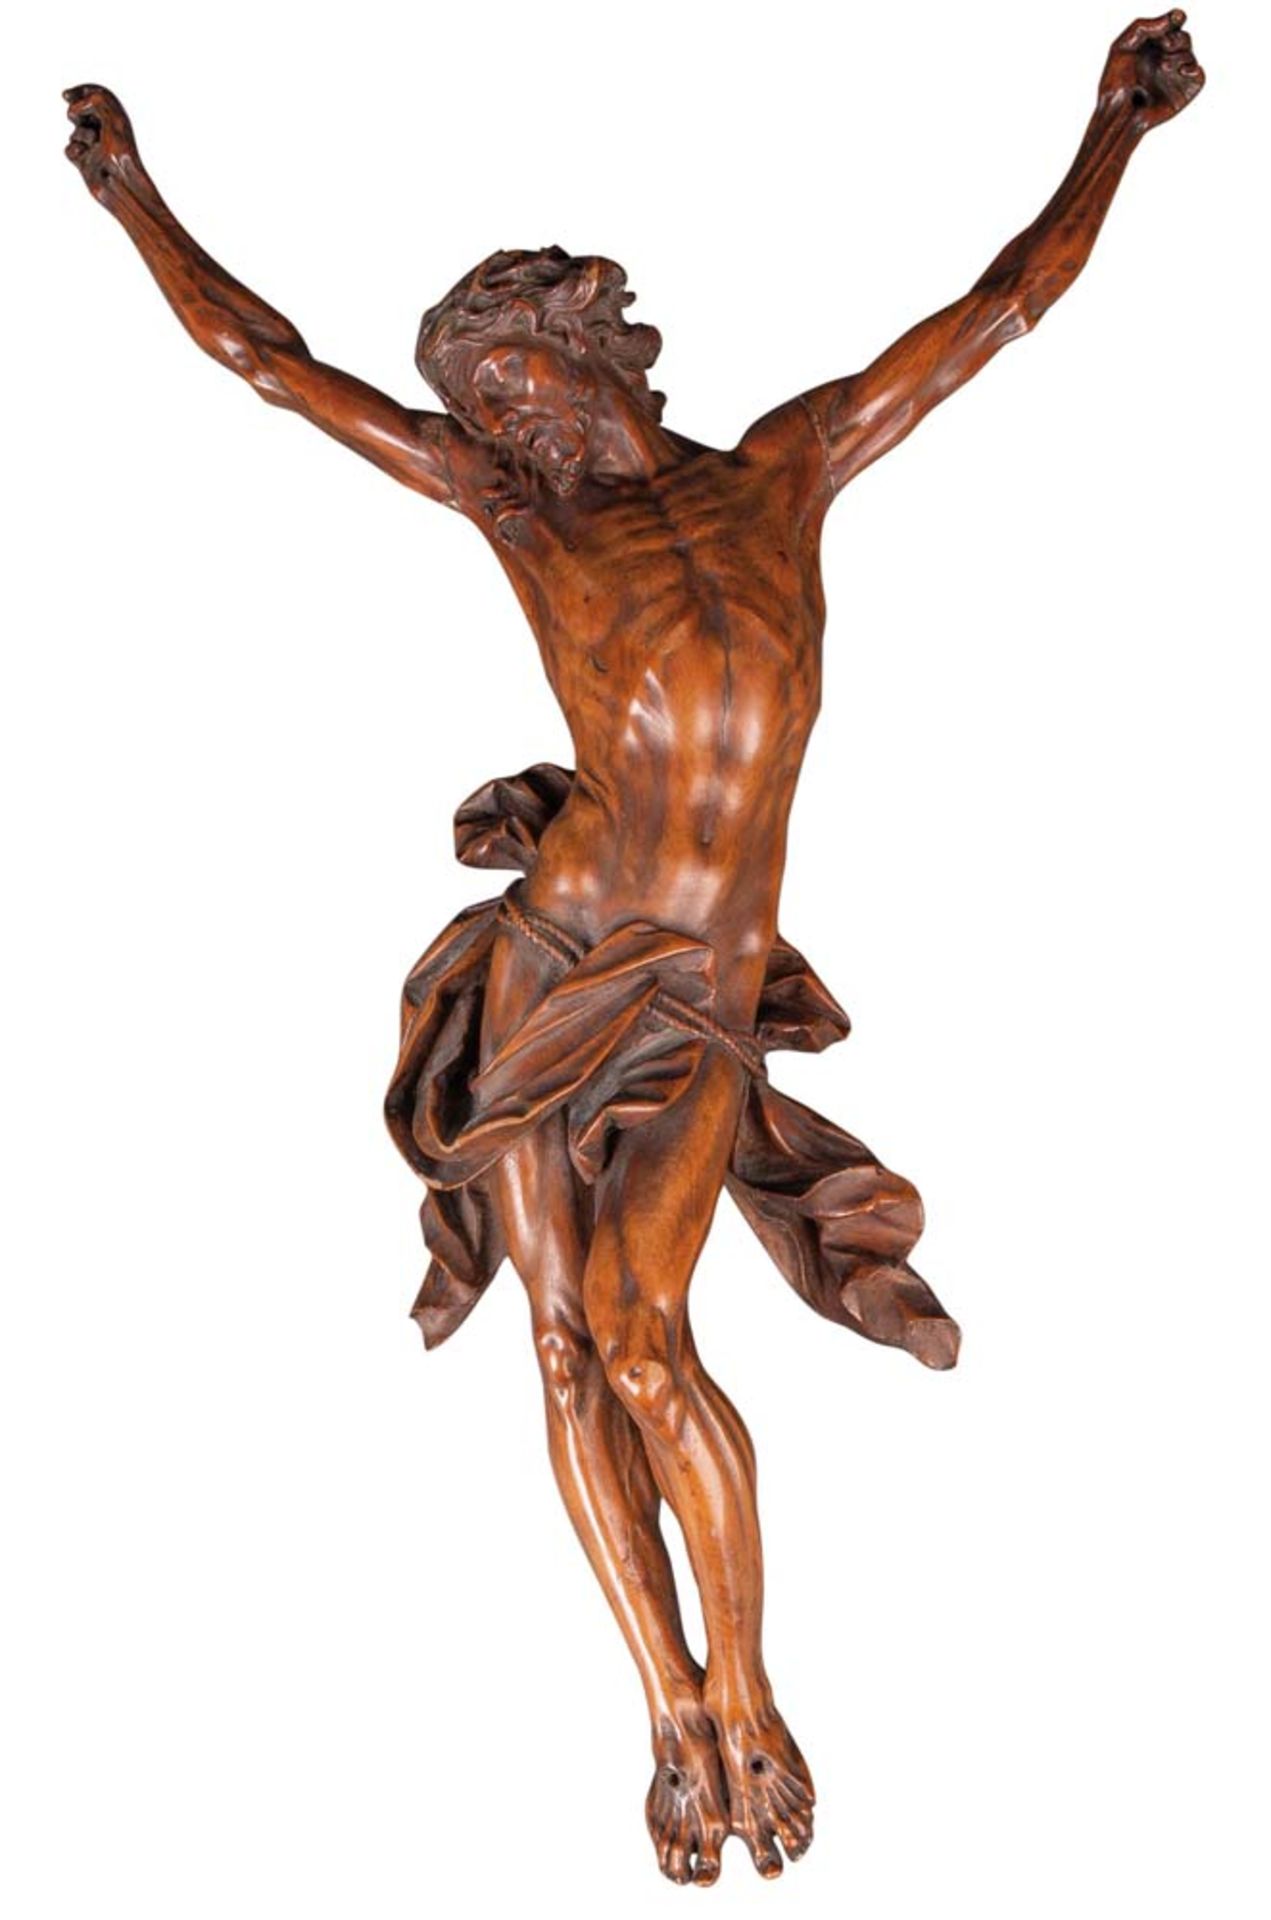 Kruzifixus. Süddeutsch 17. Jh. Das Kruzifixus überzeugt durch seine ausgesprochen naturalistische